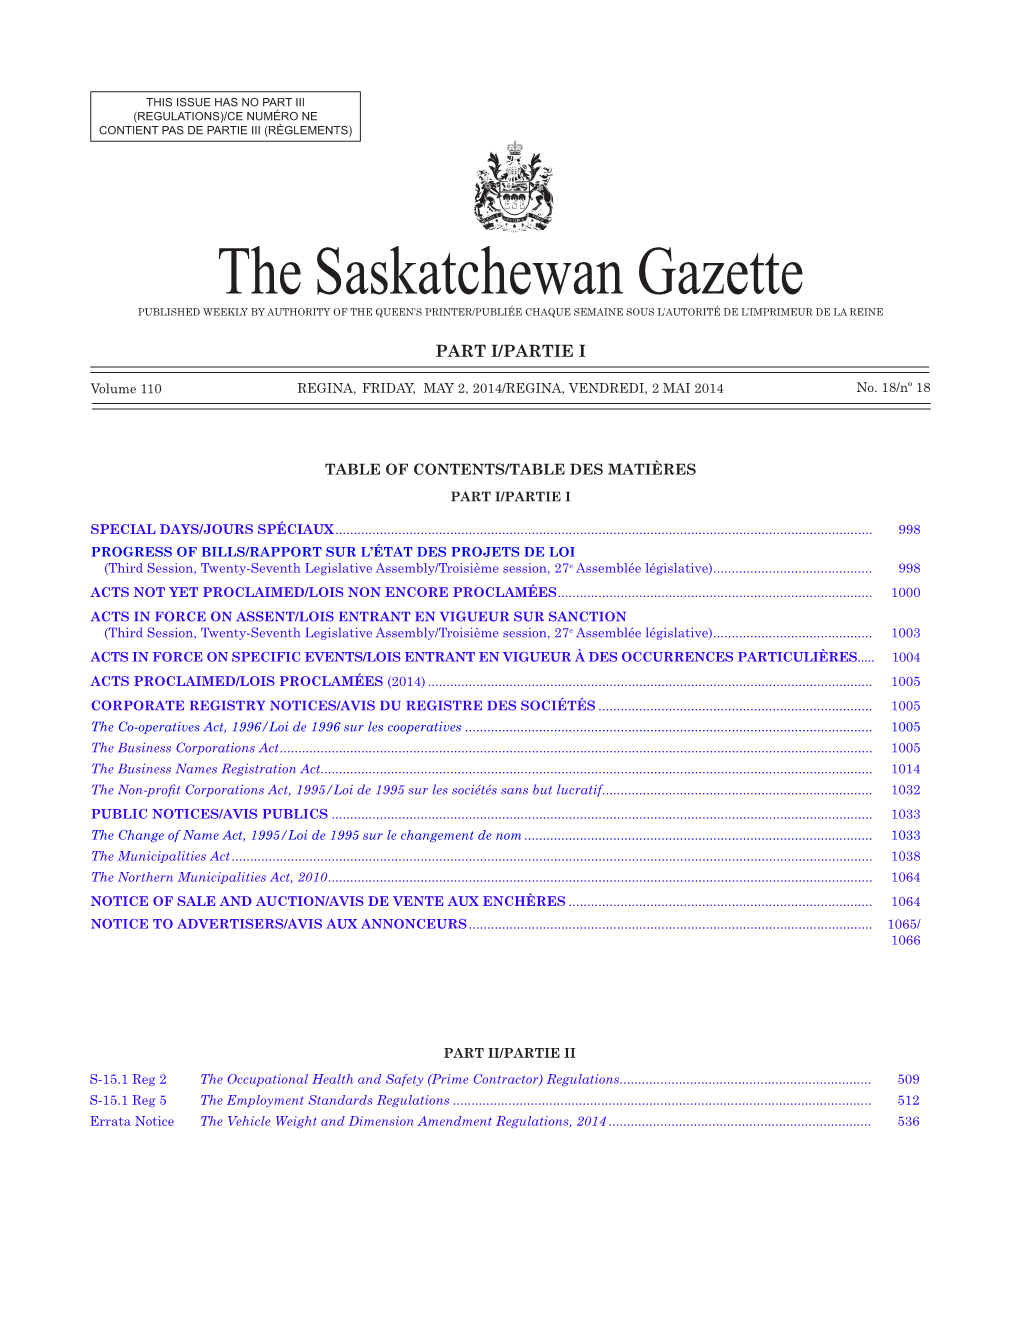 The Saskatchewan Gazette, May 2, 2014 997 (Regulations)/Ce Numéro Ne Contient Pas De Partie Iii (Règlements)